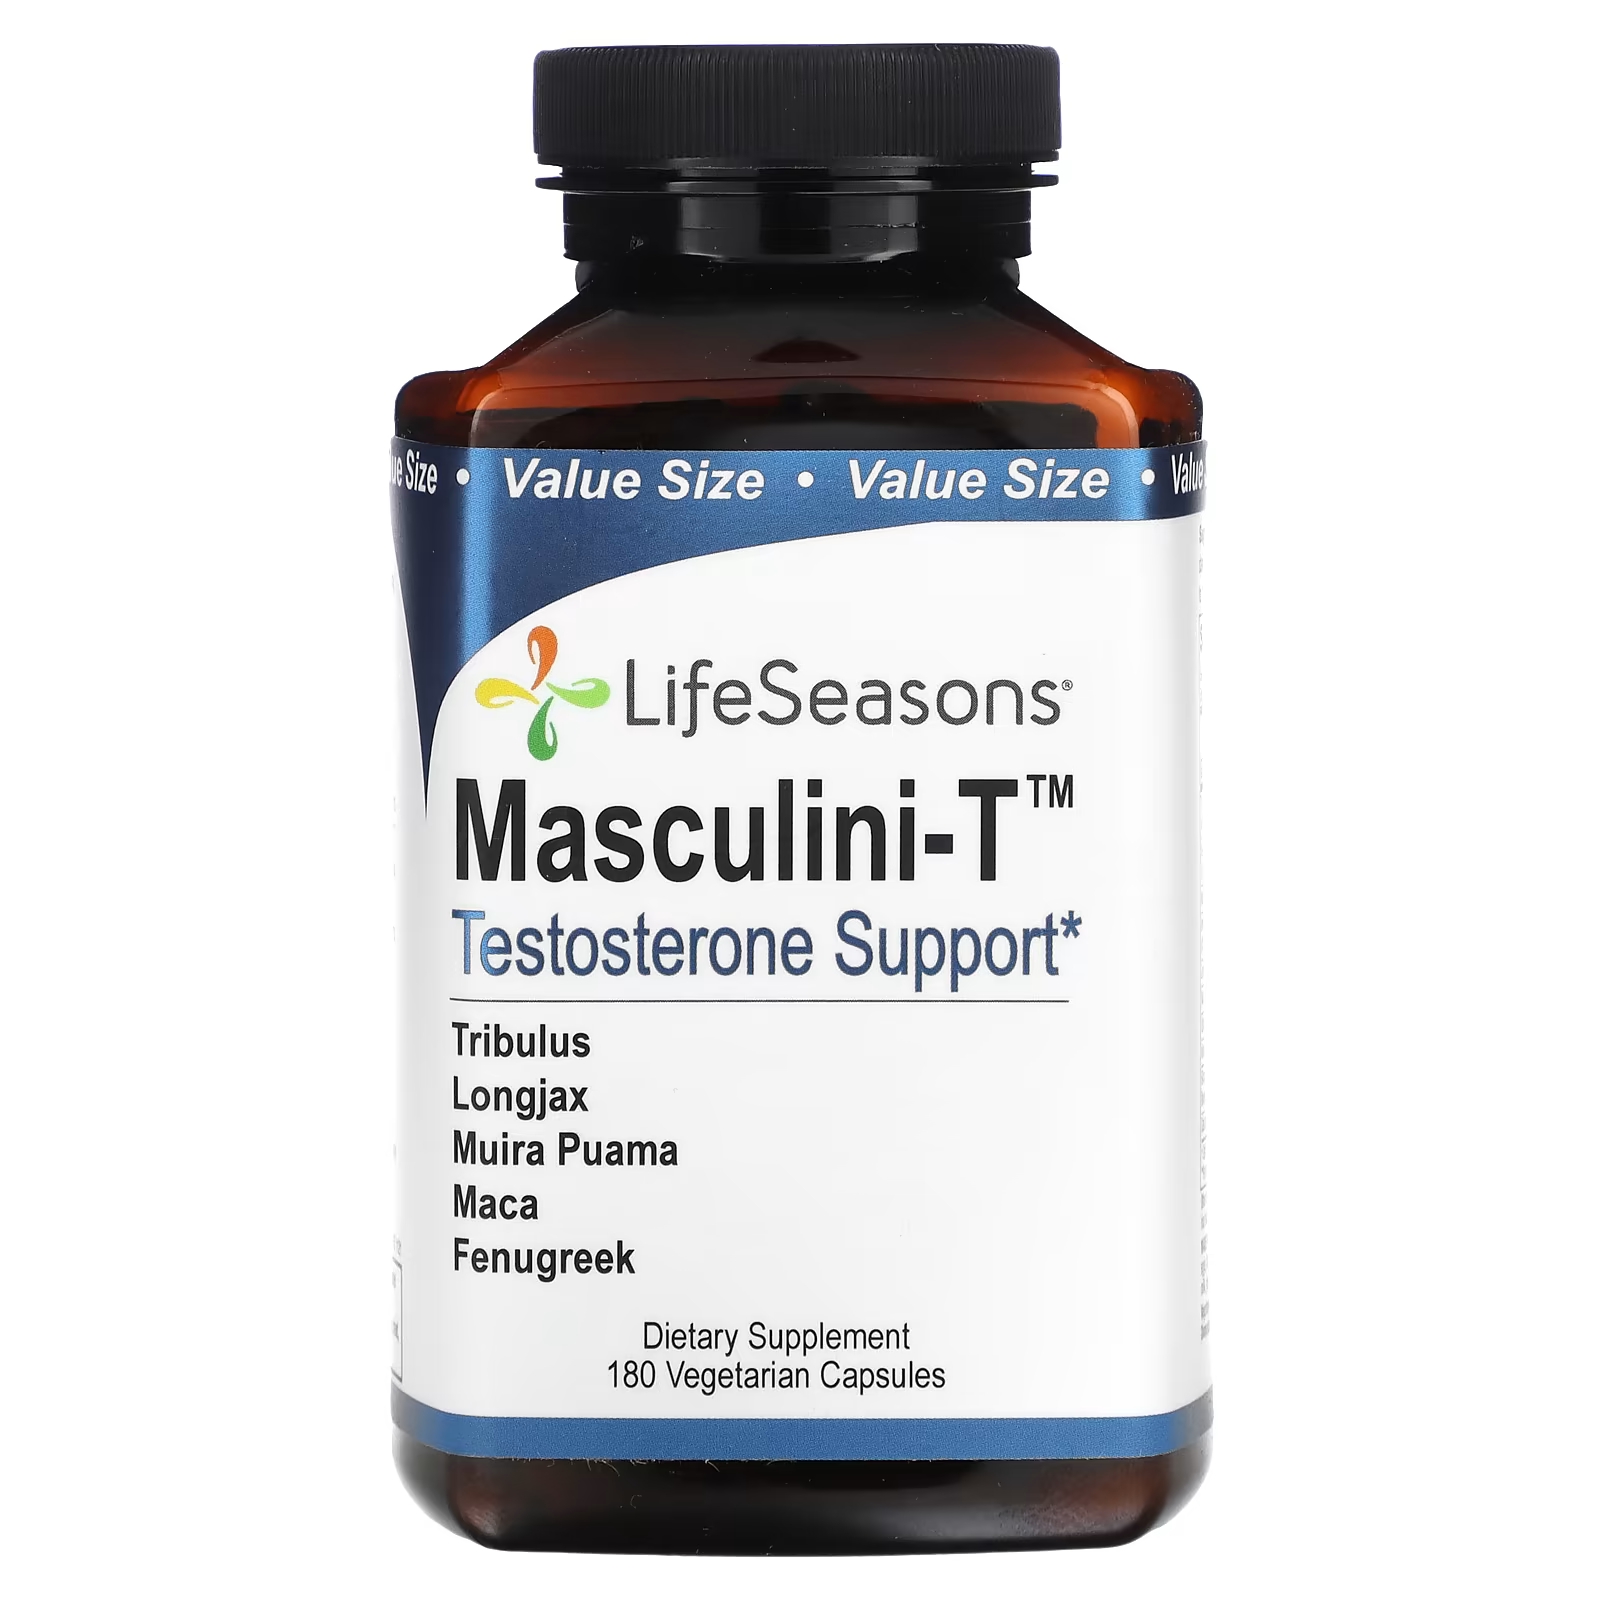 Пищевая добавка LifeSeasons Masculini-T, 180 капсул